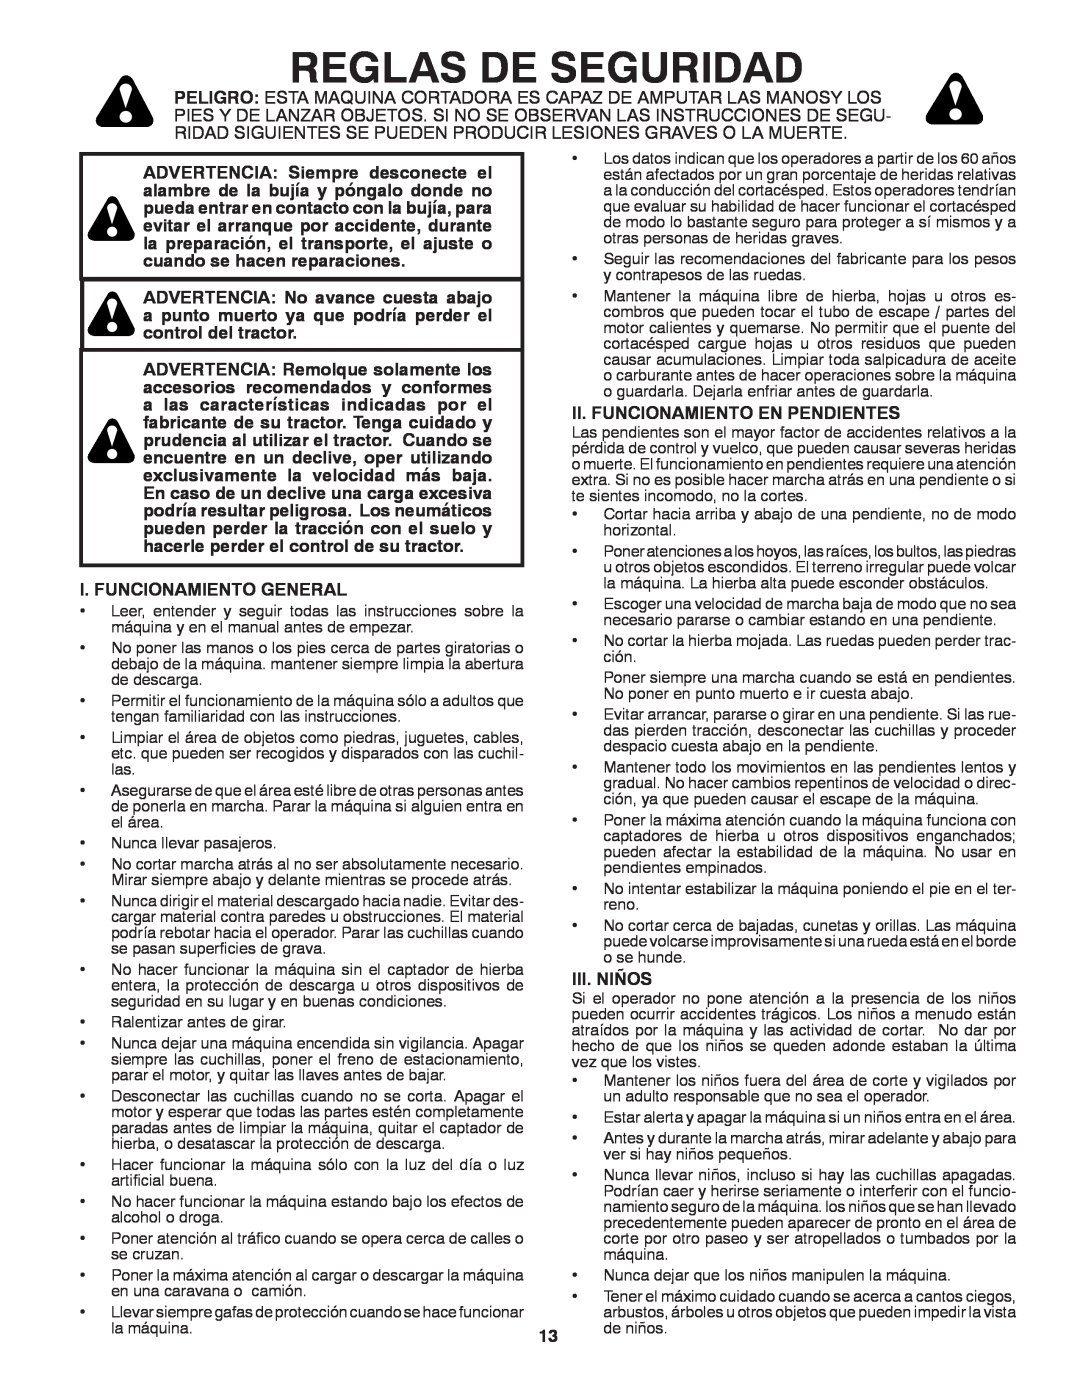 Craftsman 917.24991 manual Reglas De Seguridad, I. Funcionamiento General, Ii. Funcionamiento En Pendientes, Iii. Niños 